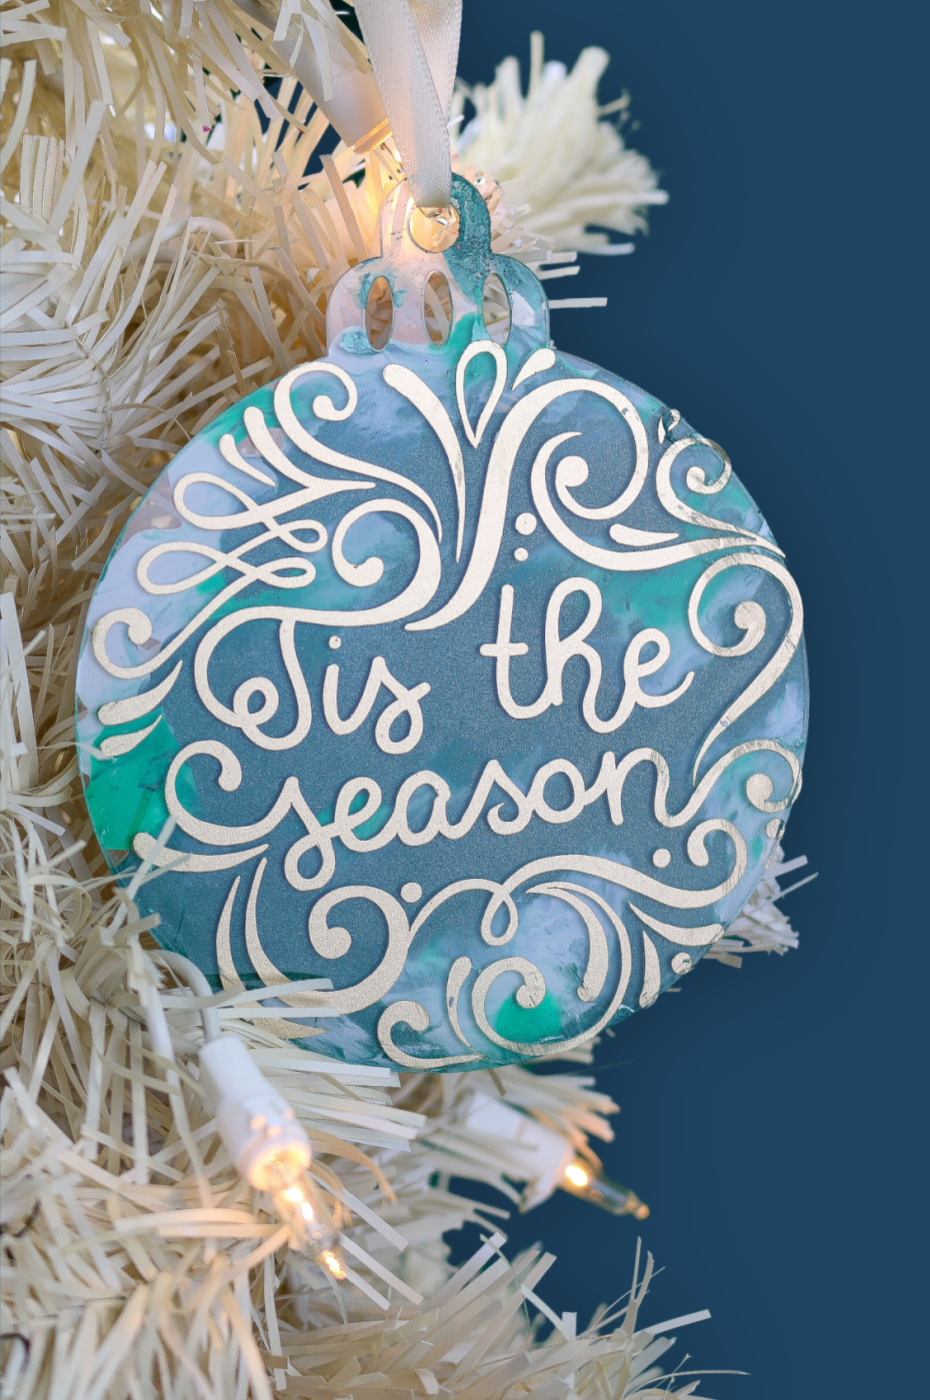 Tis the Season disc ornament on a white Christmas tree